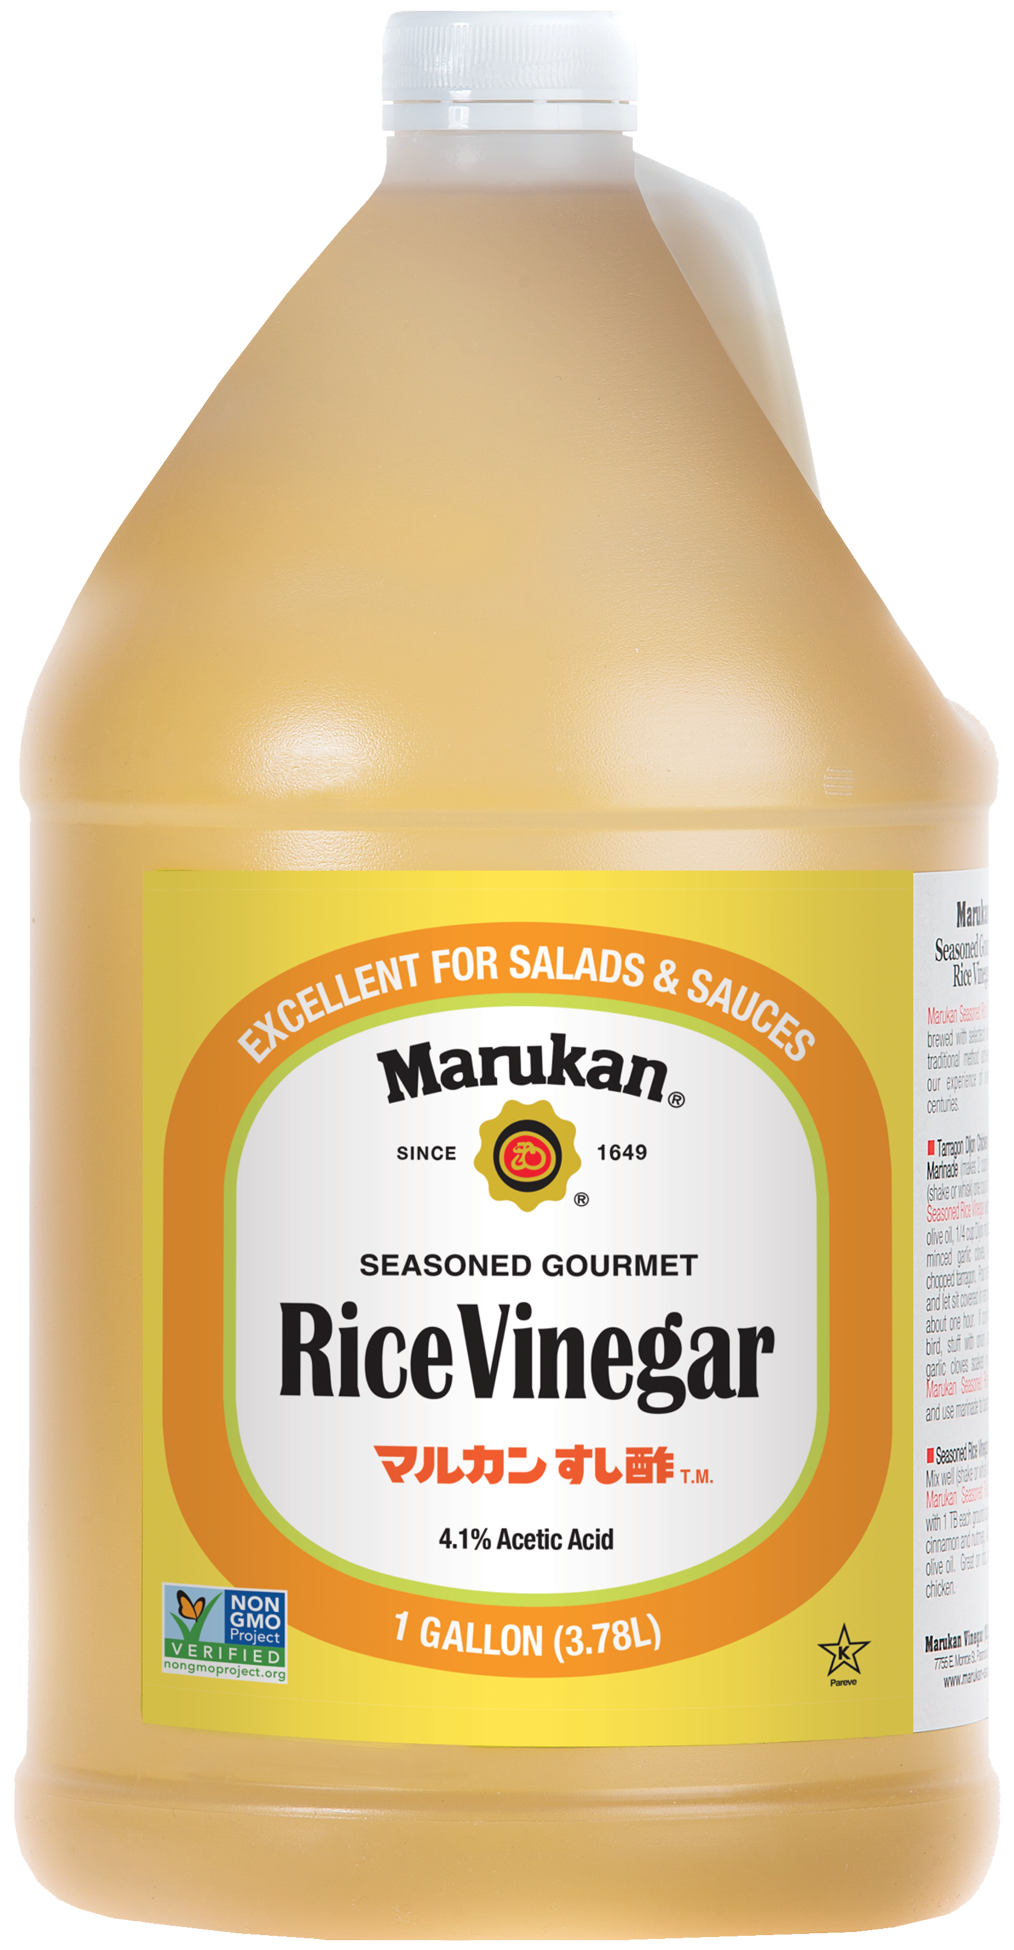 Bottle of Seasoned Gourmet Rice Vinegar